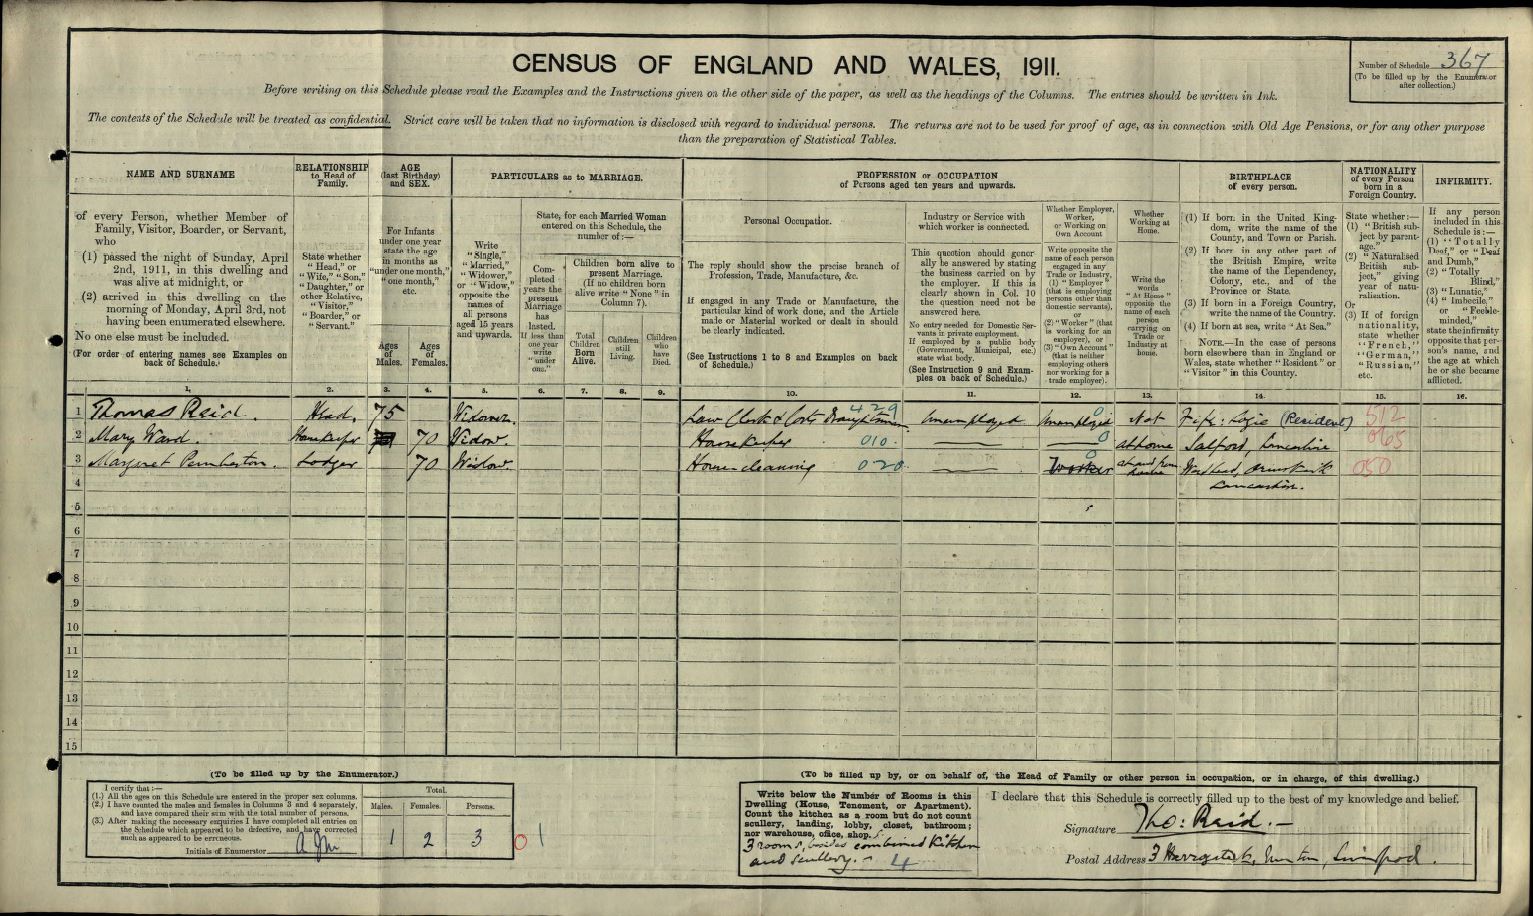 Thomas Reid Snr in the 1911 Census